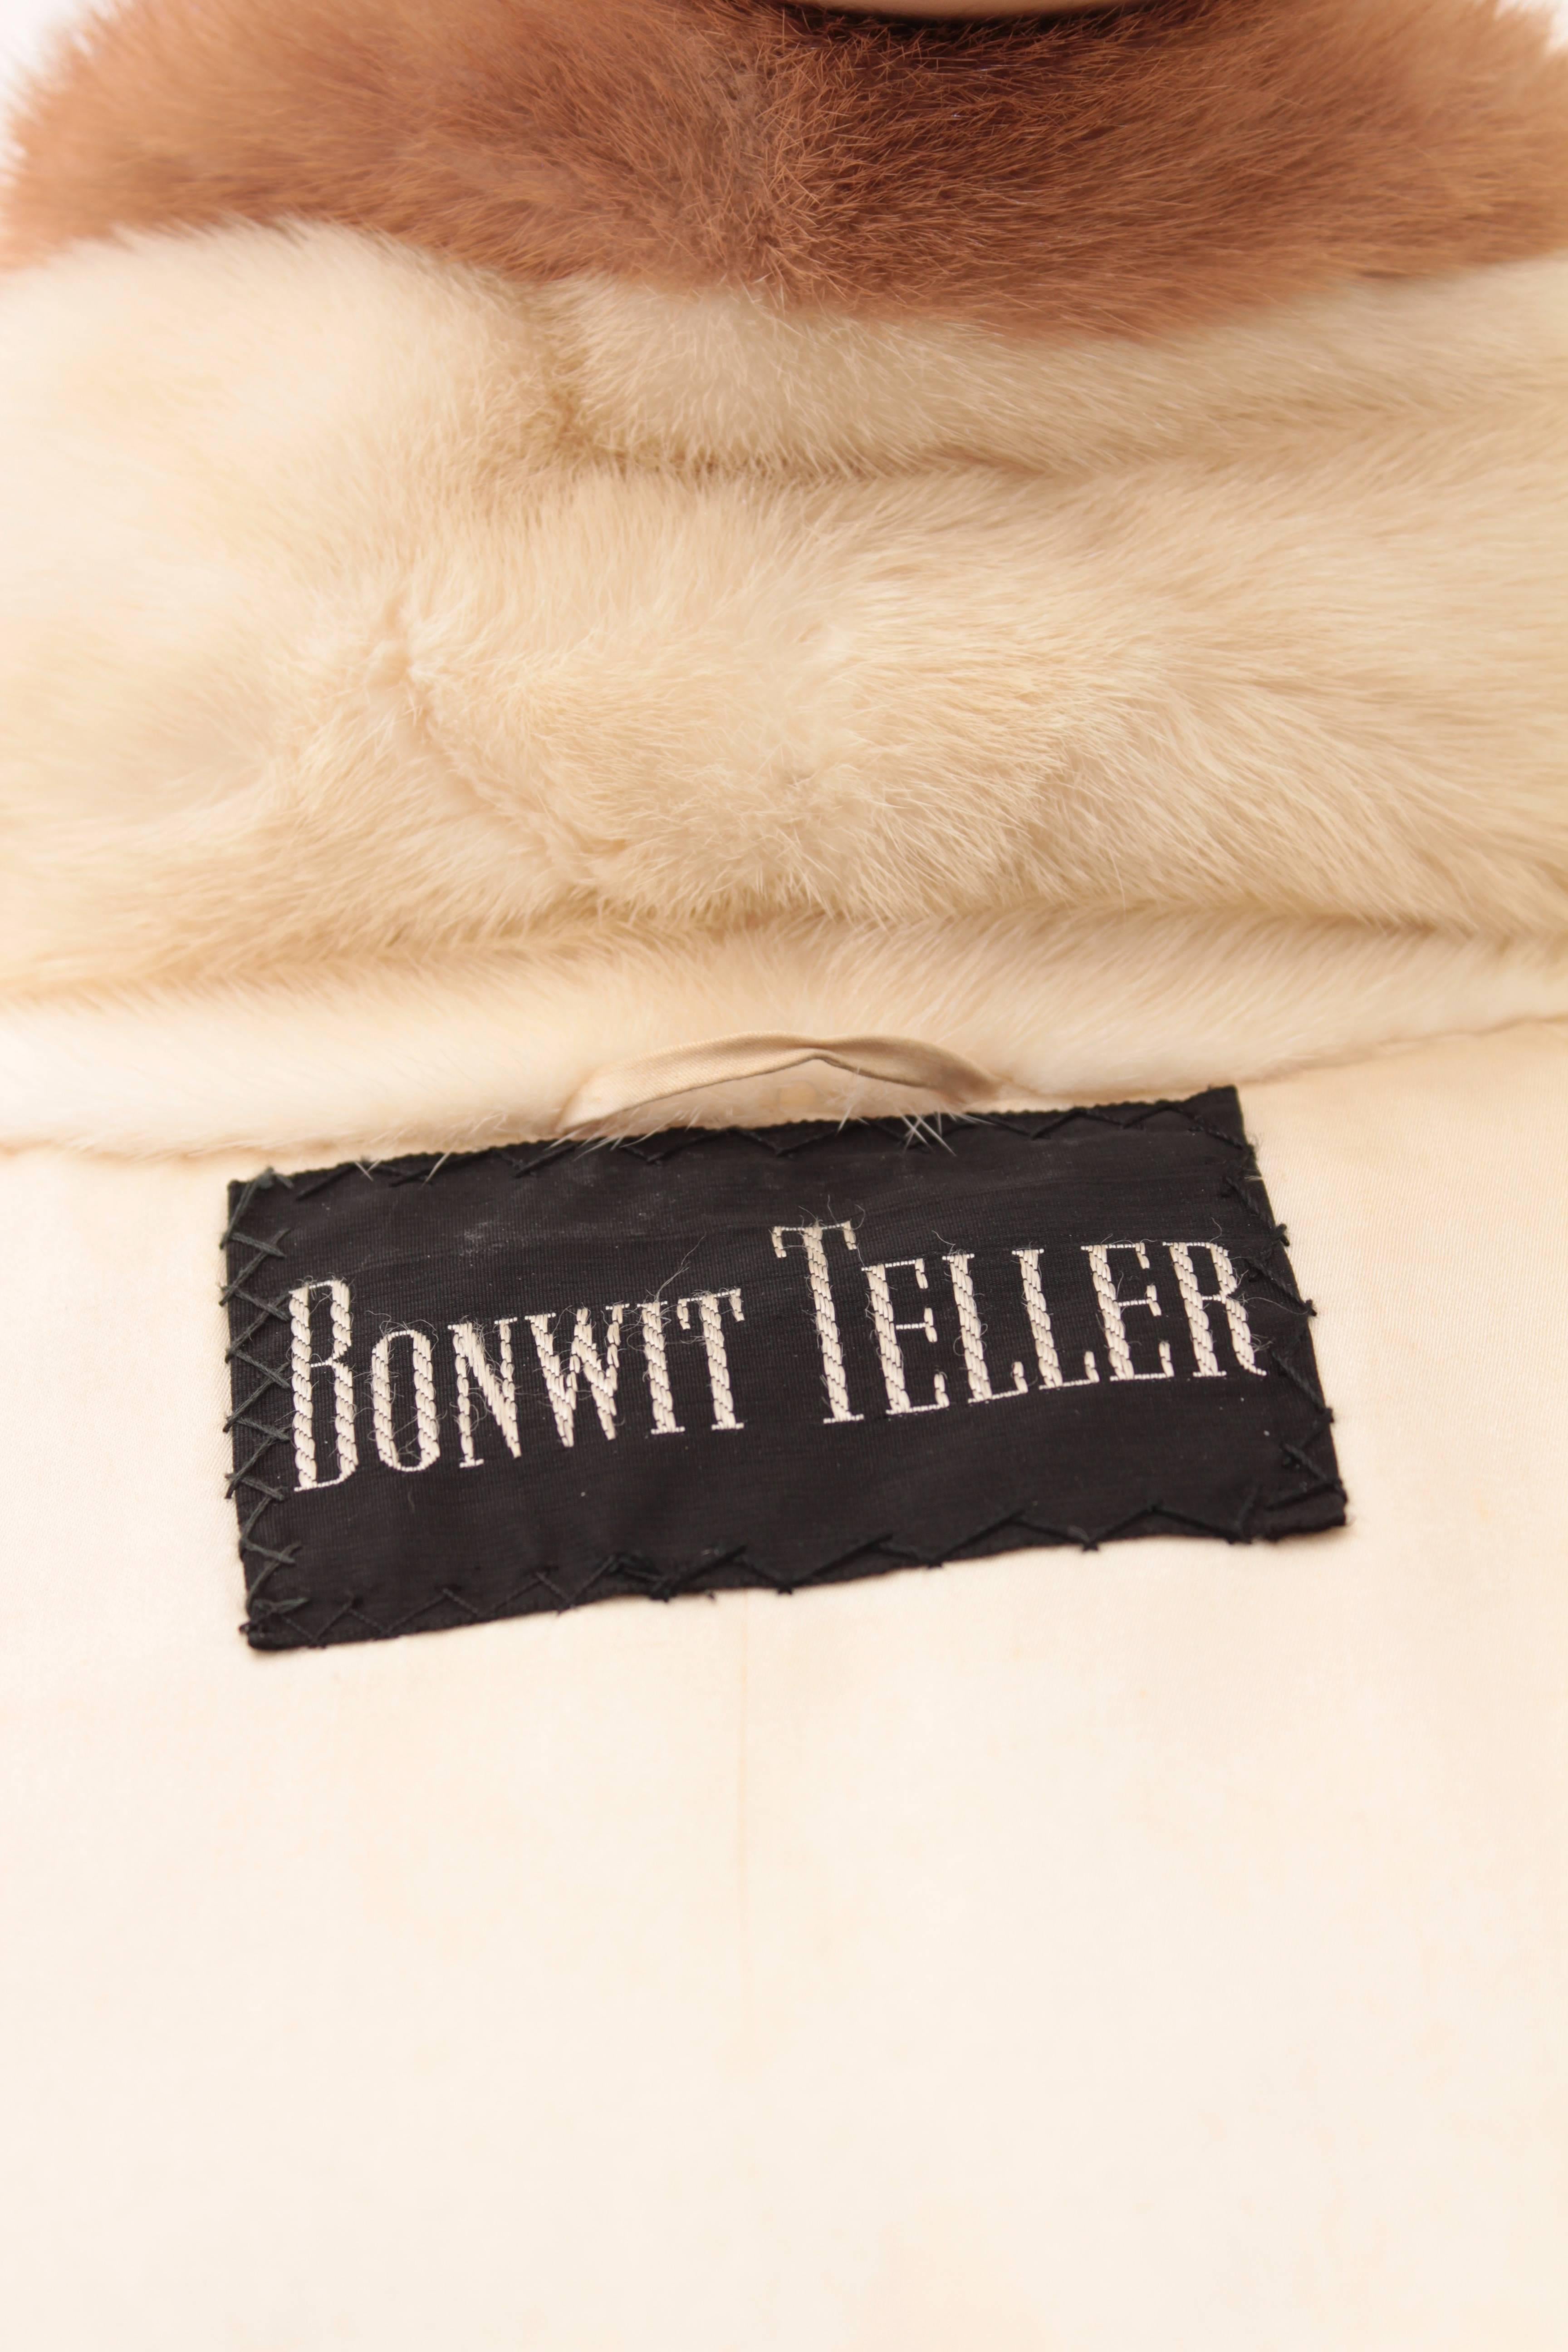 Grosvenor Bonwit Teller Mink Jacket White Pastel Dark Ranch Fur As Seen in Vogue 1